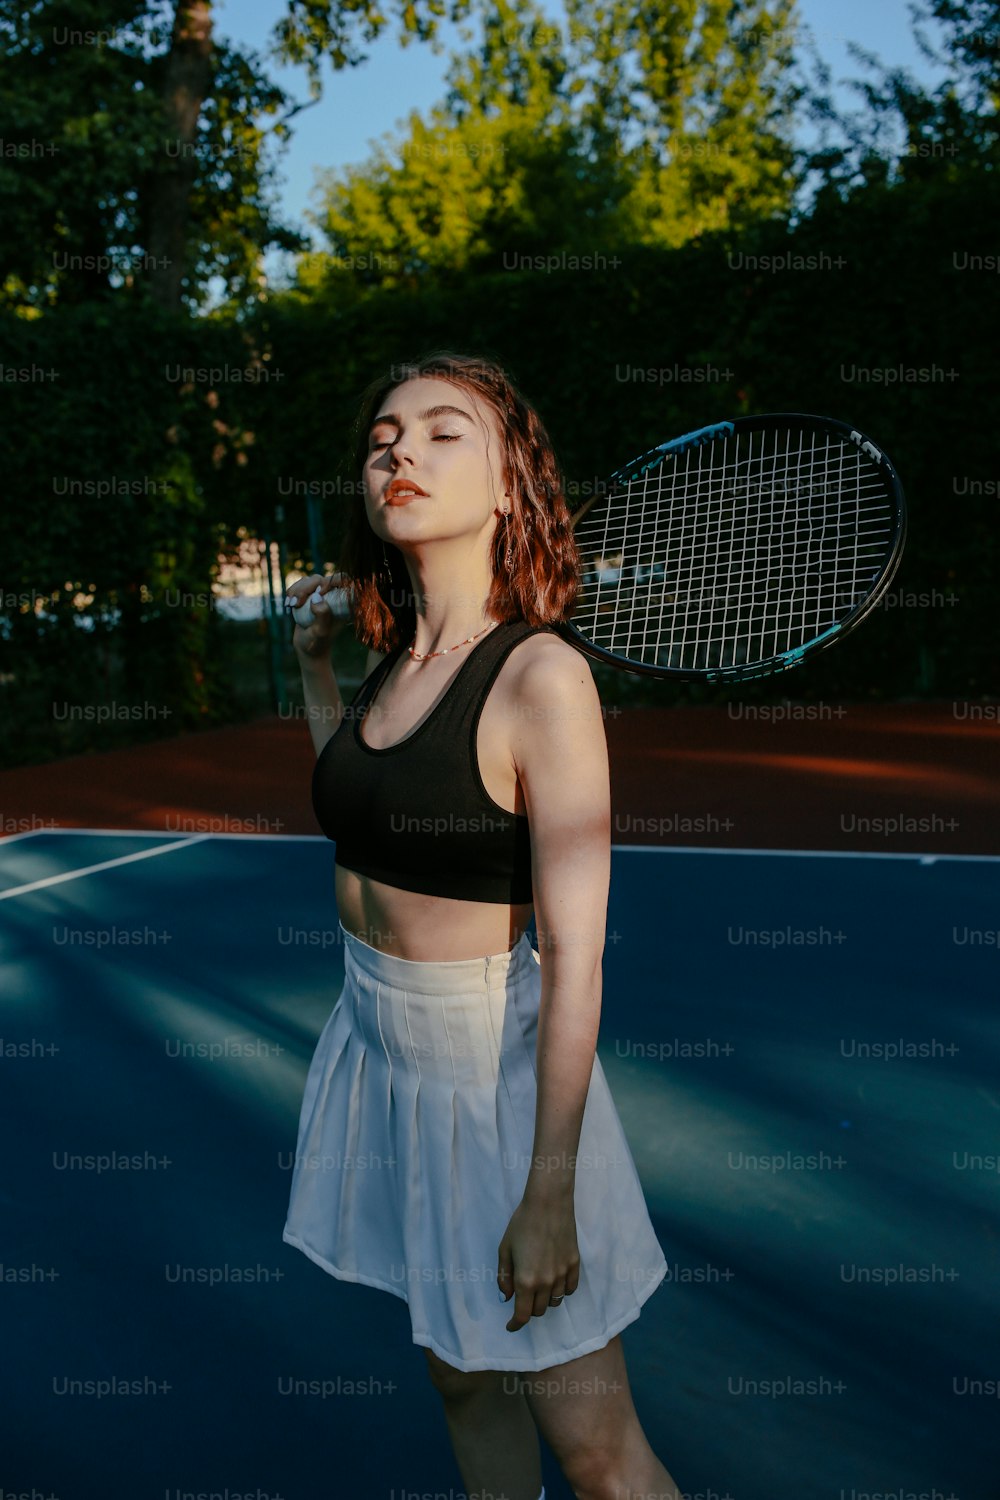 Une femme debout sur un court de tennis tenant une raquette